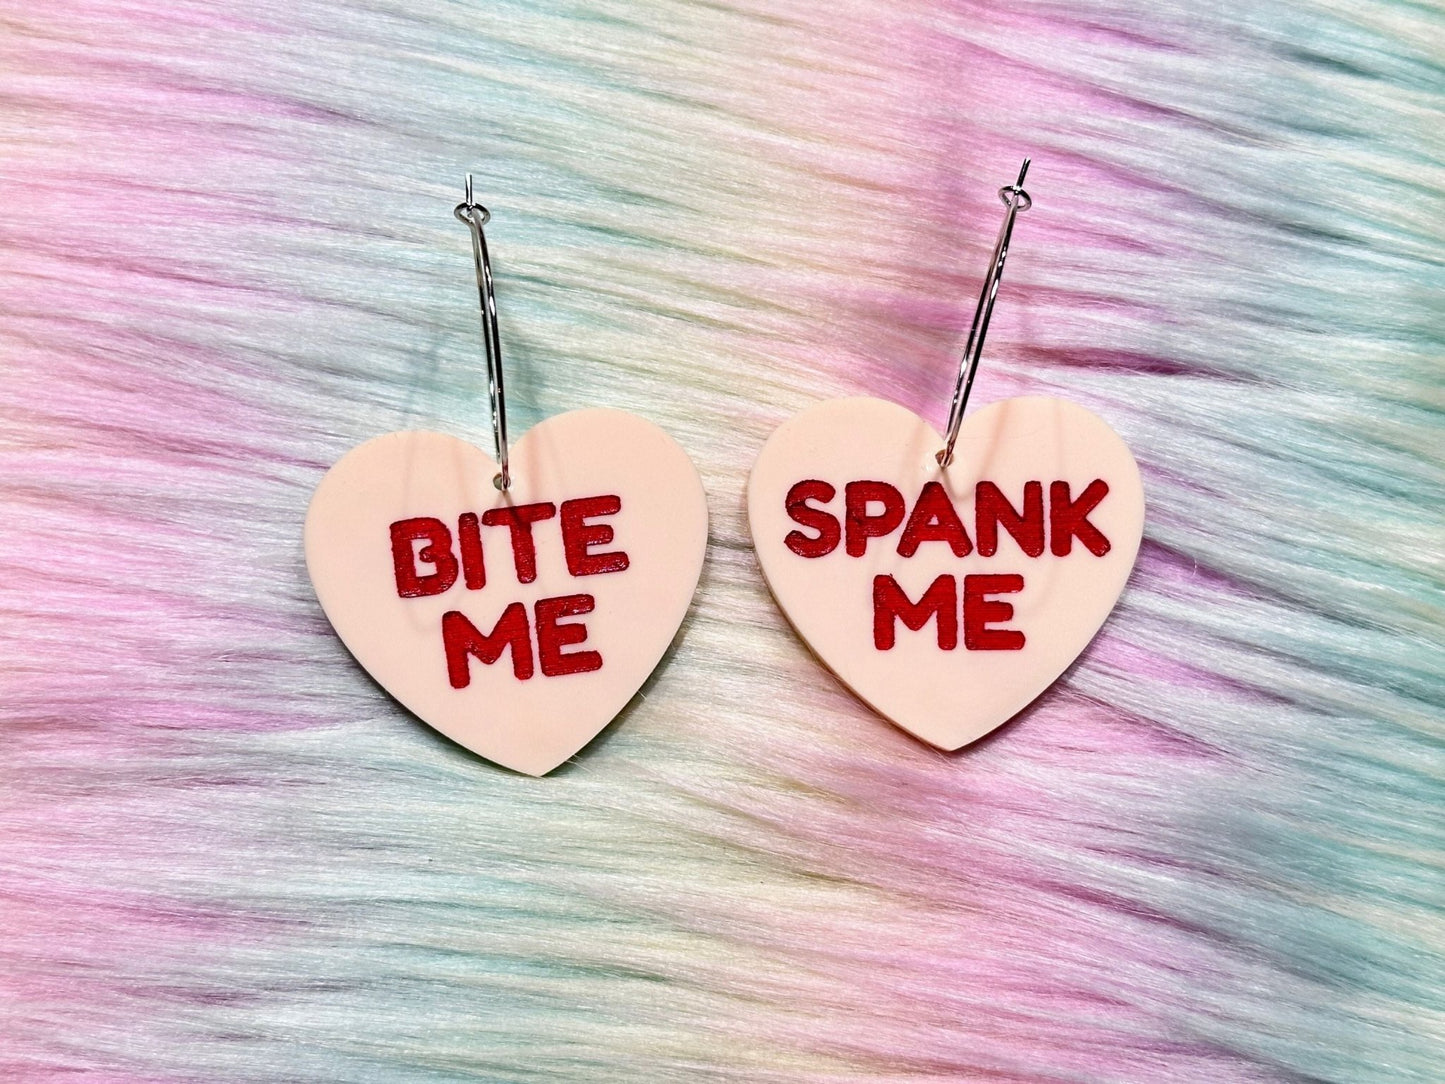 Raunchy Heart Earrings - "Bite Me, Spank Me" - Painted Raina